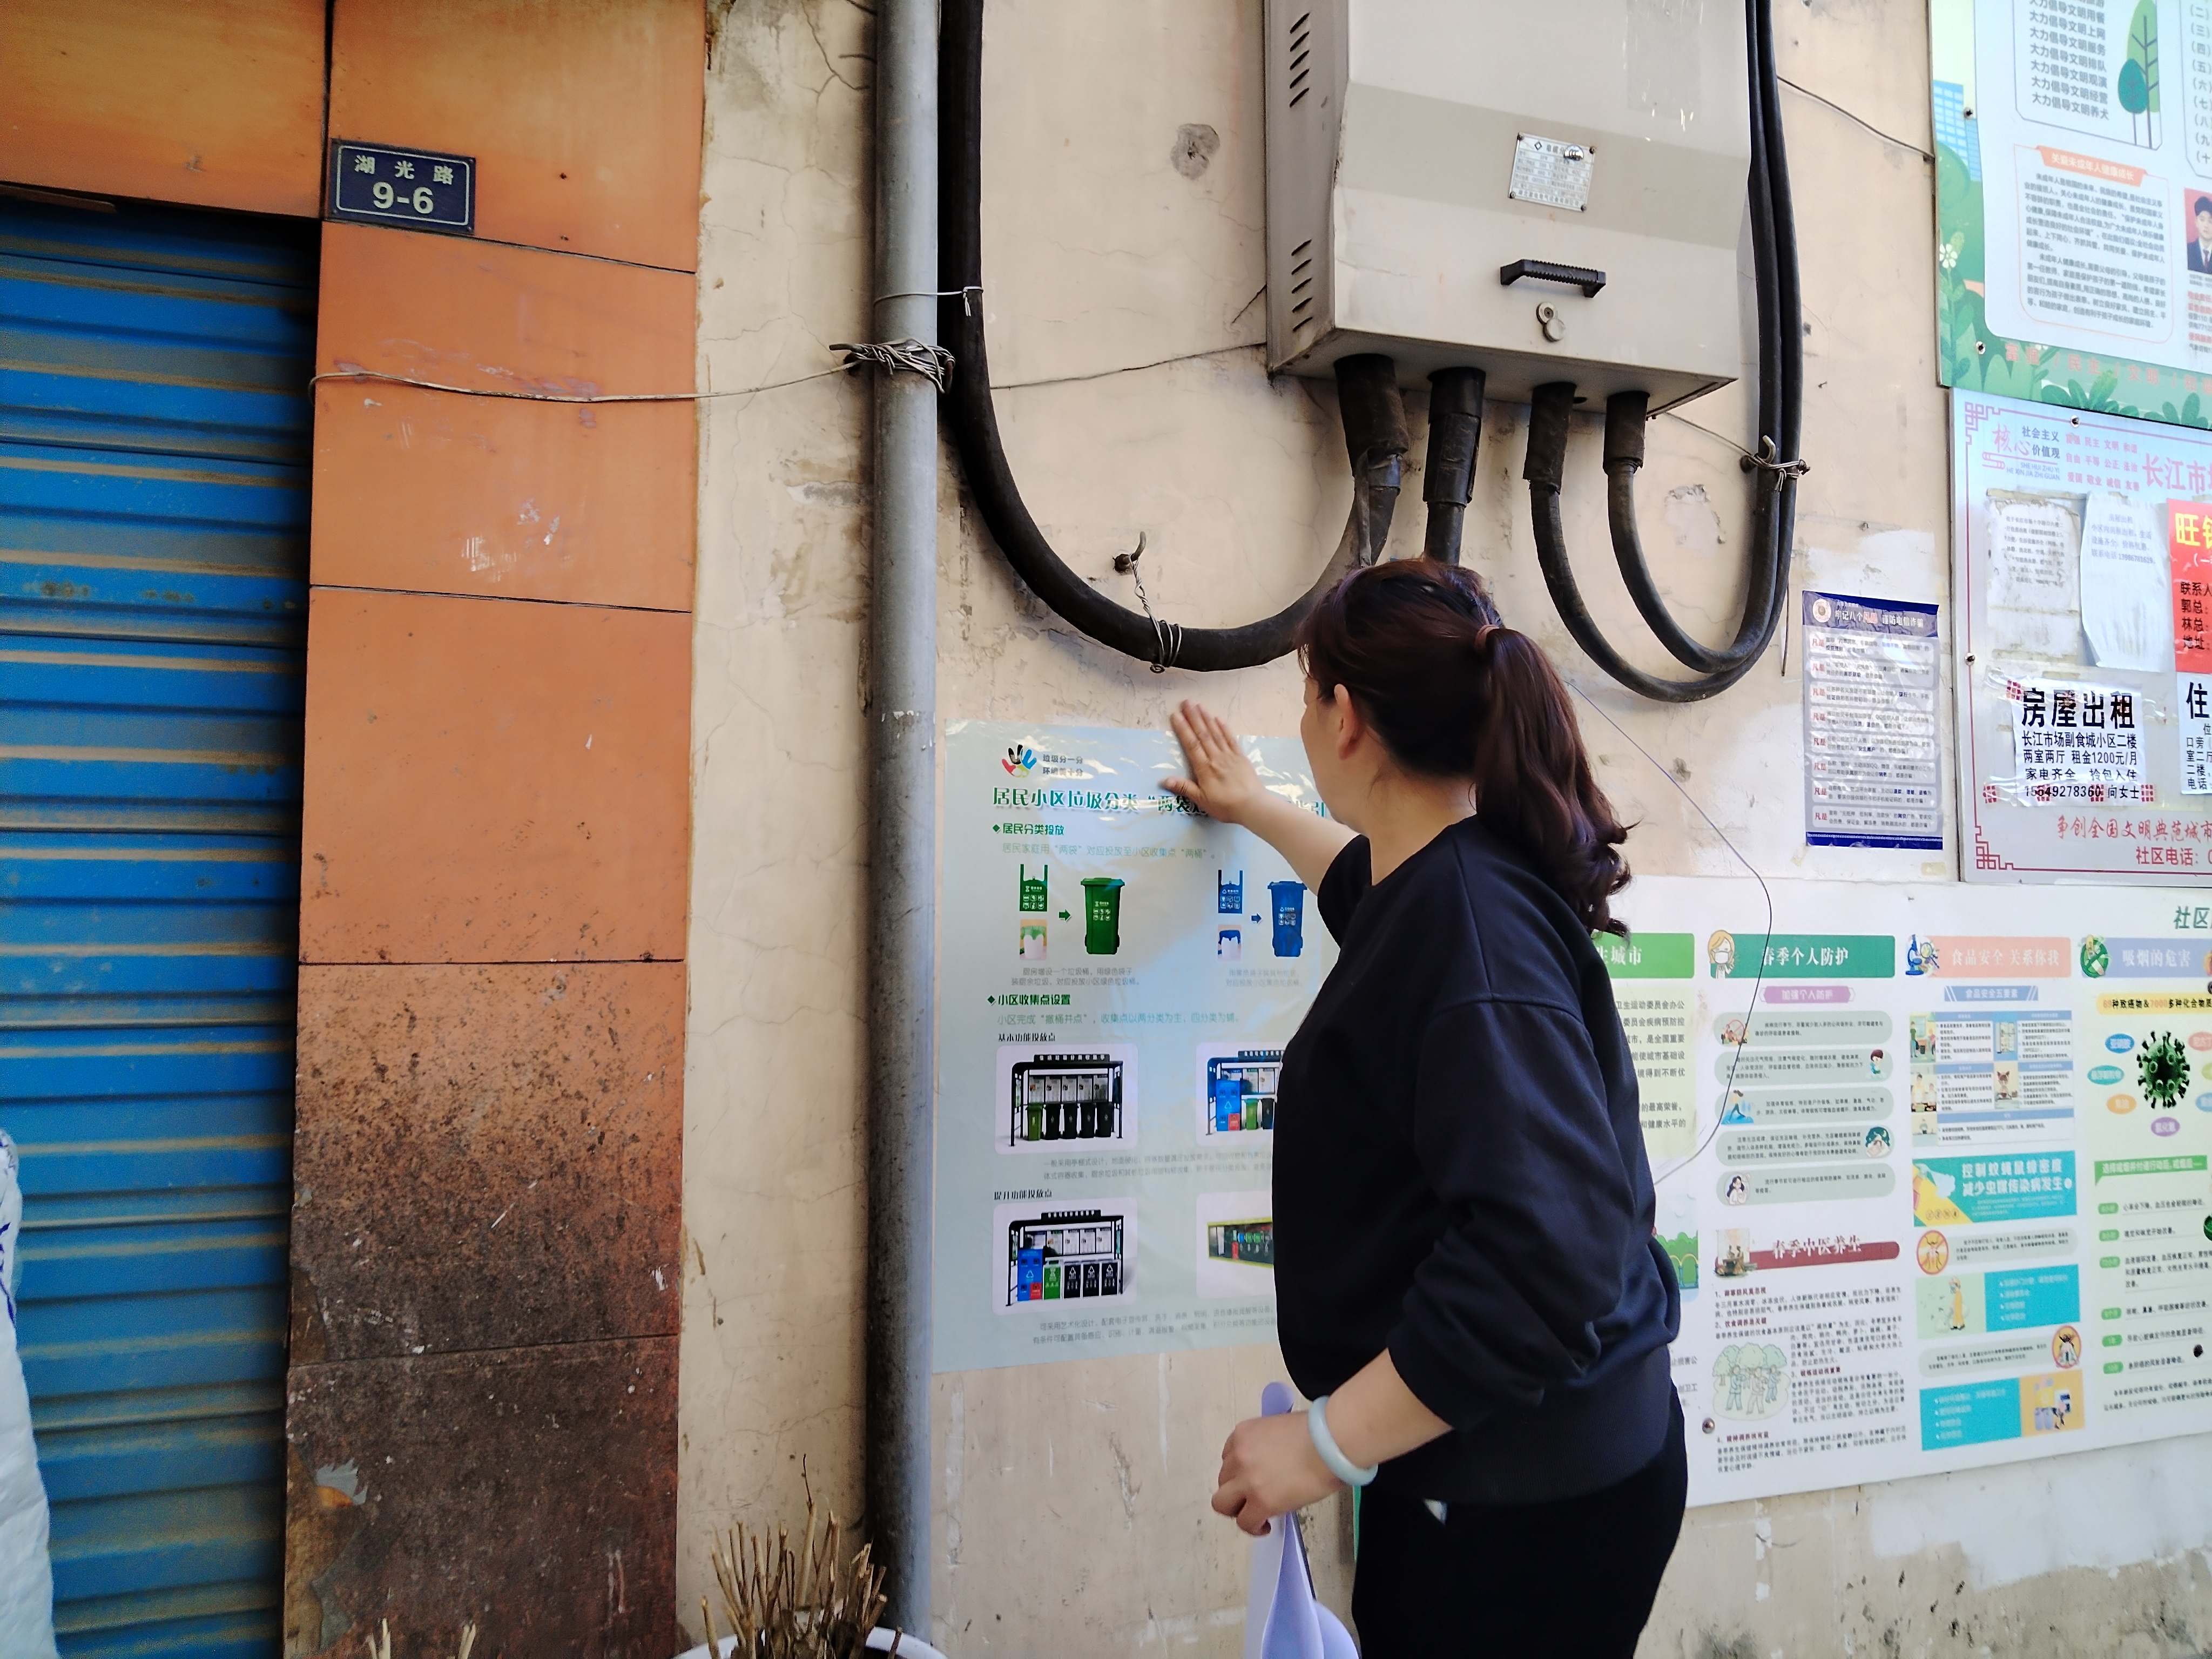 长江市场社区开展垃圾分类指引